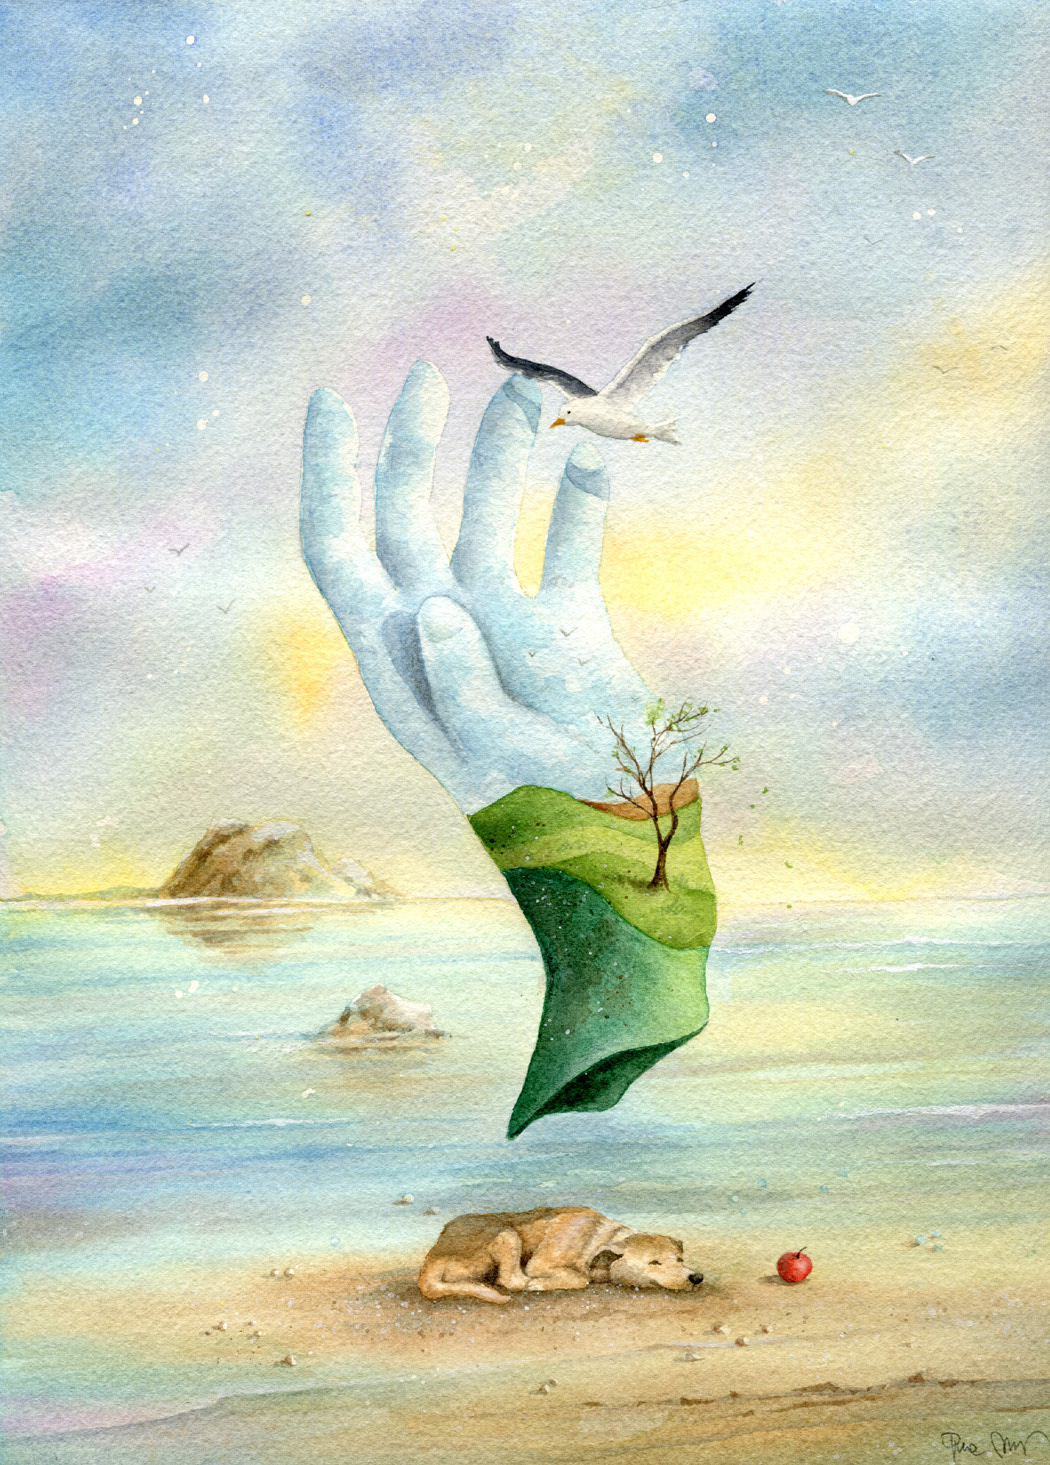 illustrazioni natura surrealismo watercolors